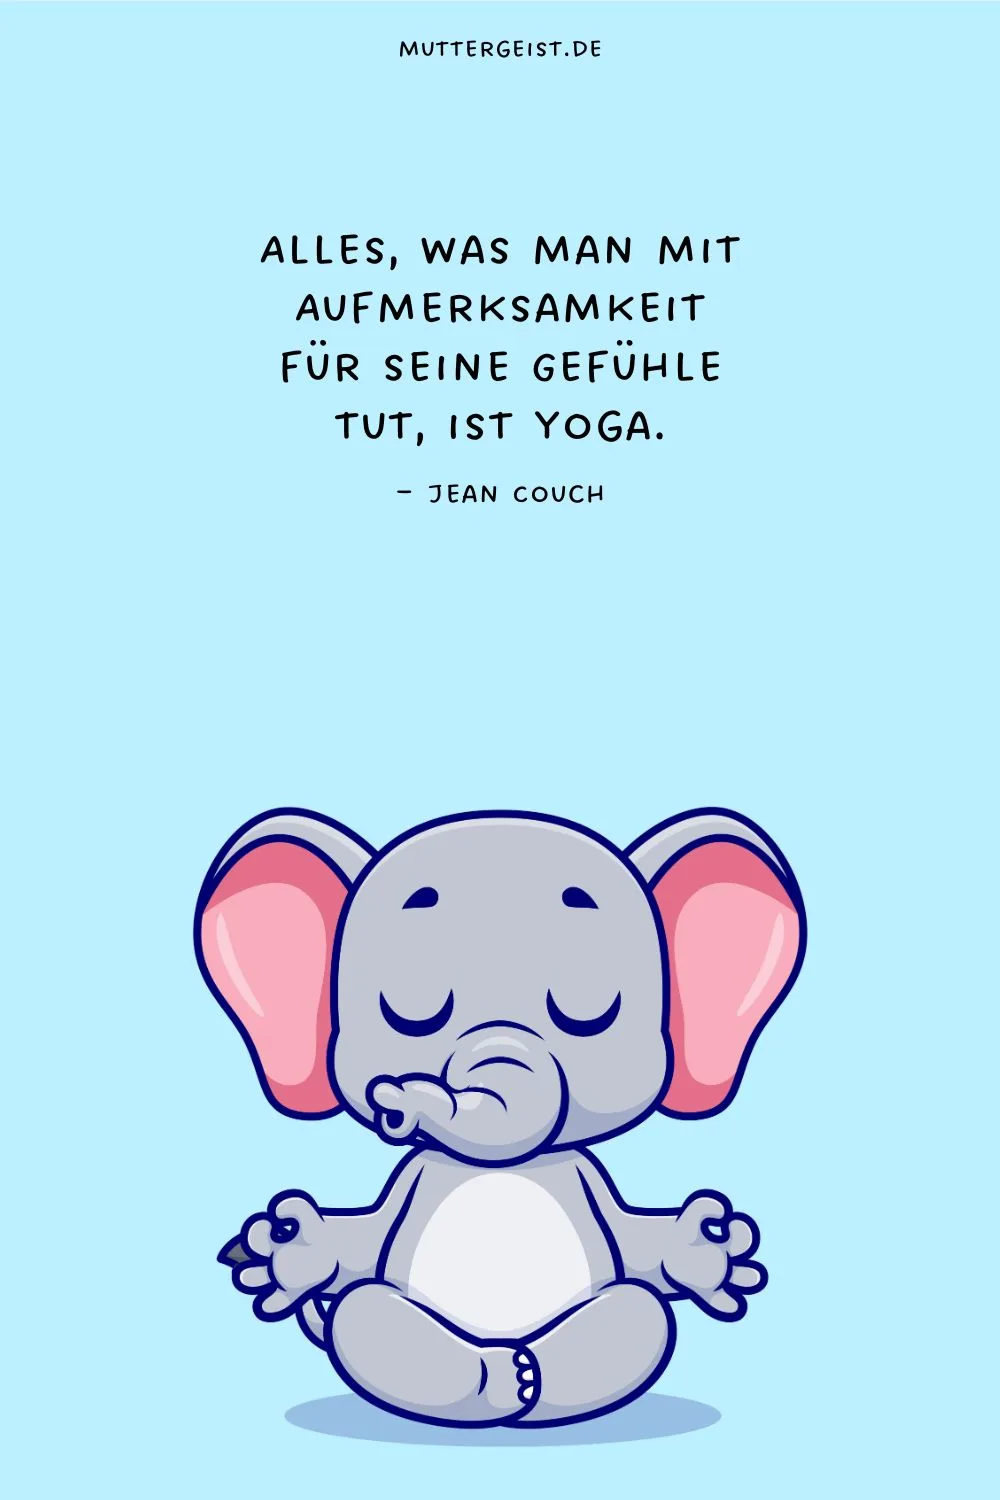 Alles, was man mit Aufmerksamkeit für seine Gefühle tut, ist Yoga